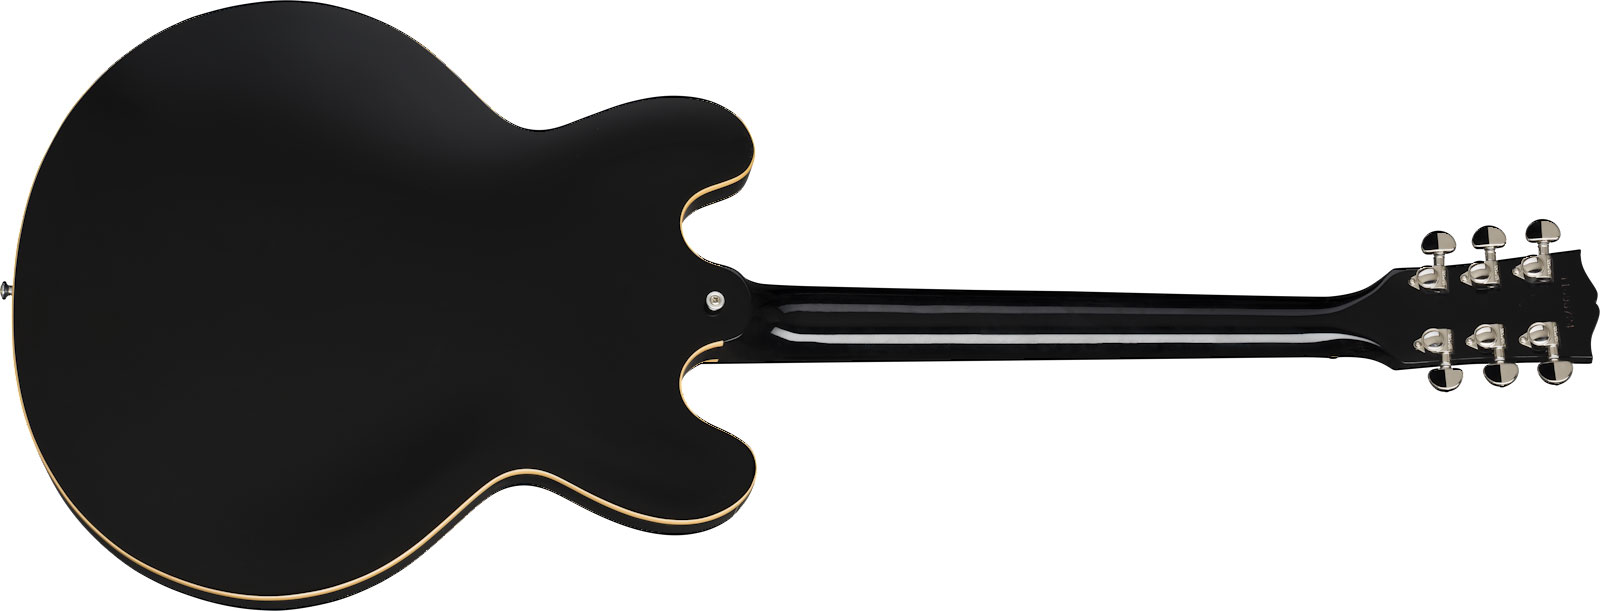 Gibson Es-335 Dot P-90 2019 Ht Rw - Ebony - Semi-Hollow E-Gitarre - Variation 1